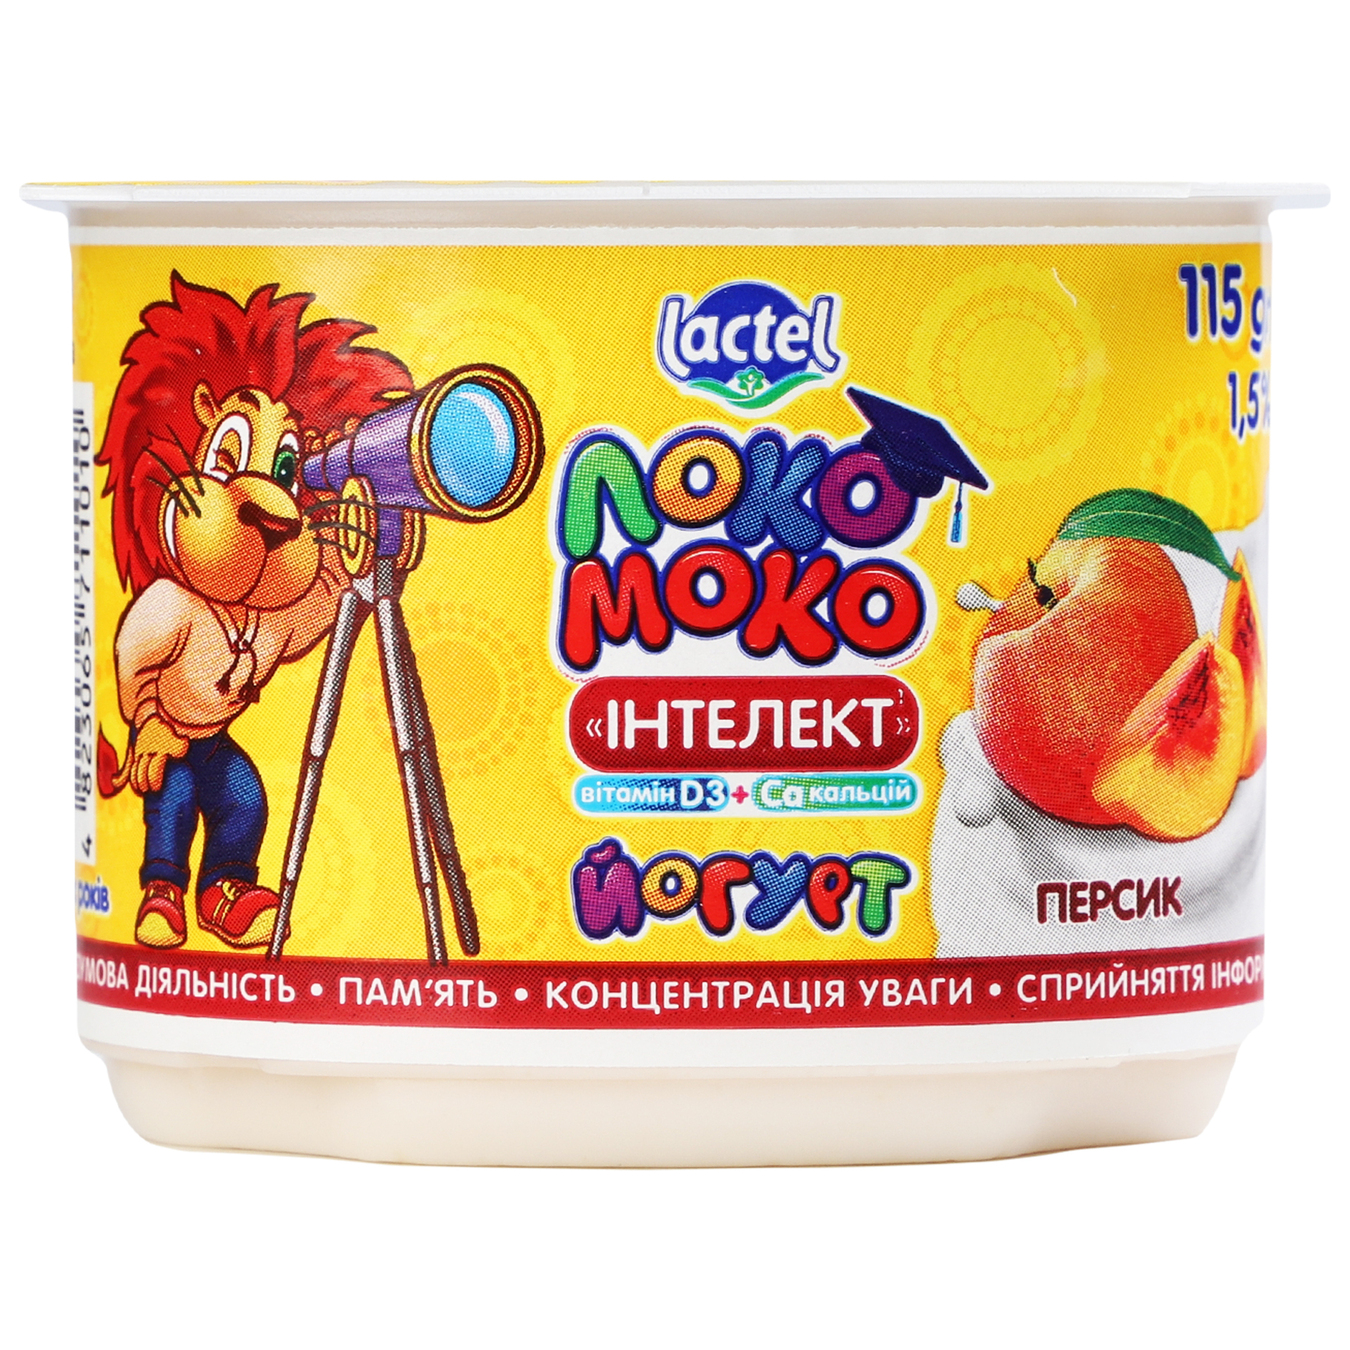 Йогурт Lactel Локо Моко Персик 1,5% 115г